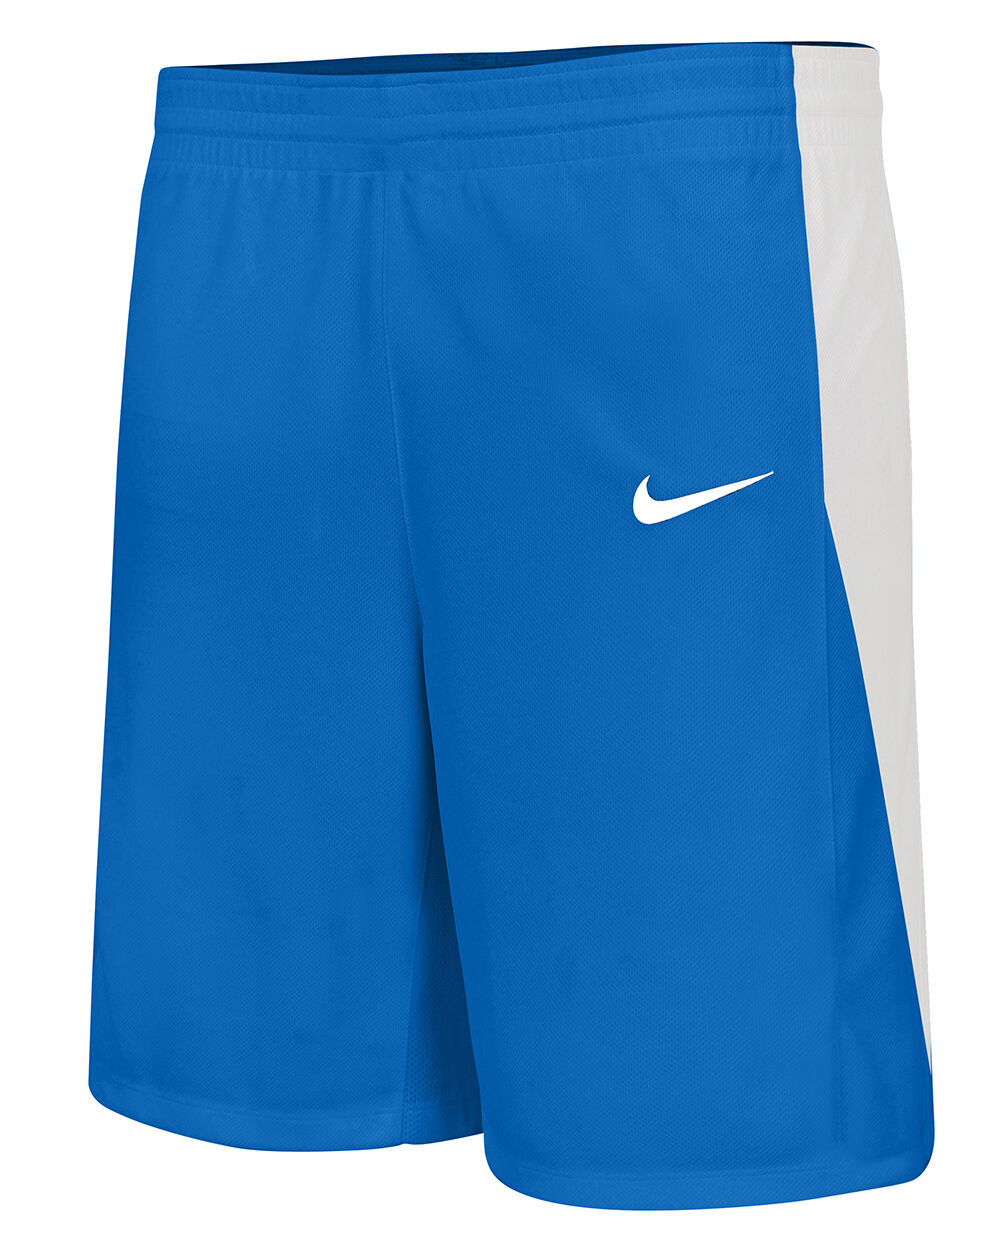 Pantalón corto de baloncesto Nike Team Azul Real Niño - NT0202-463